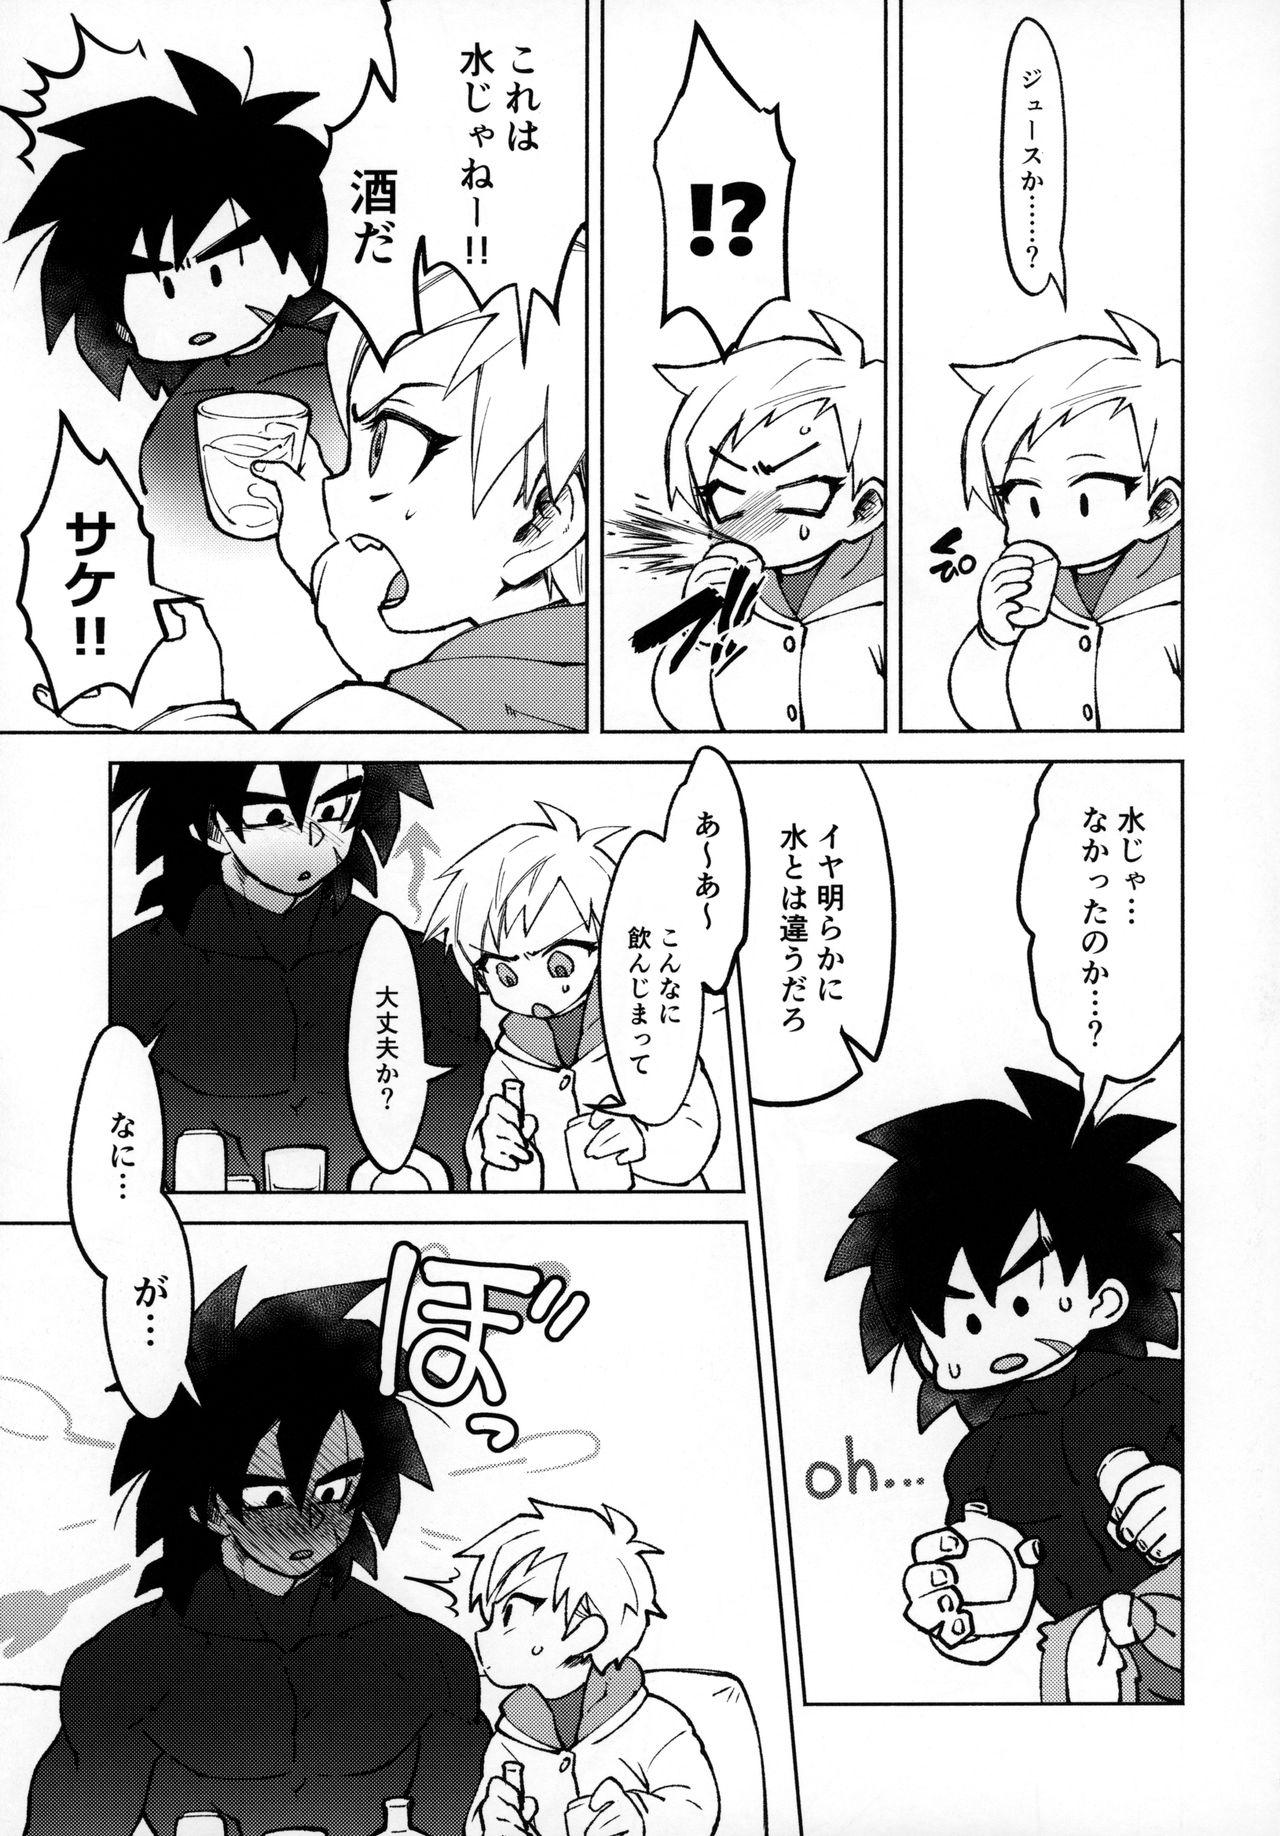 Semen Osake wa Hatachi ni Natte kara! - Dragon ball super Peituda - Page 10